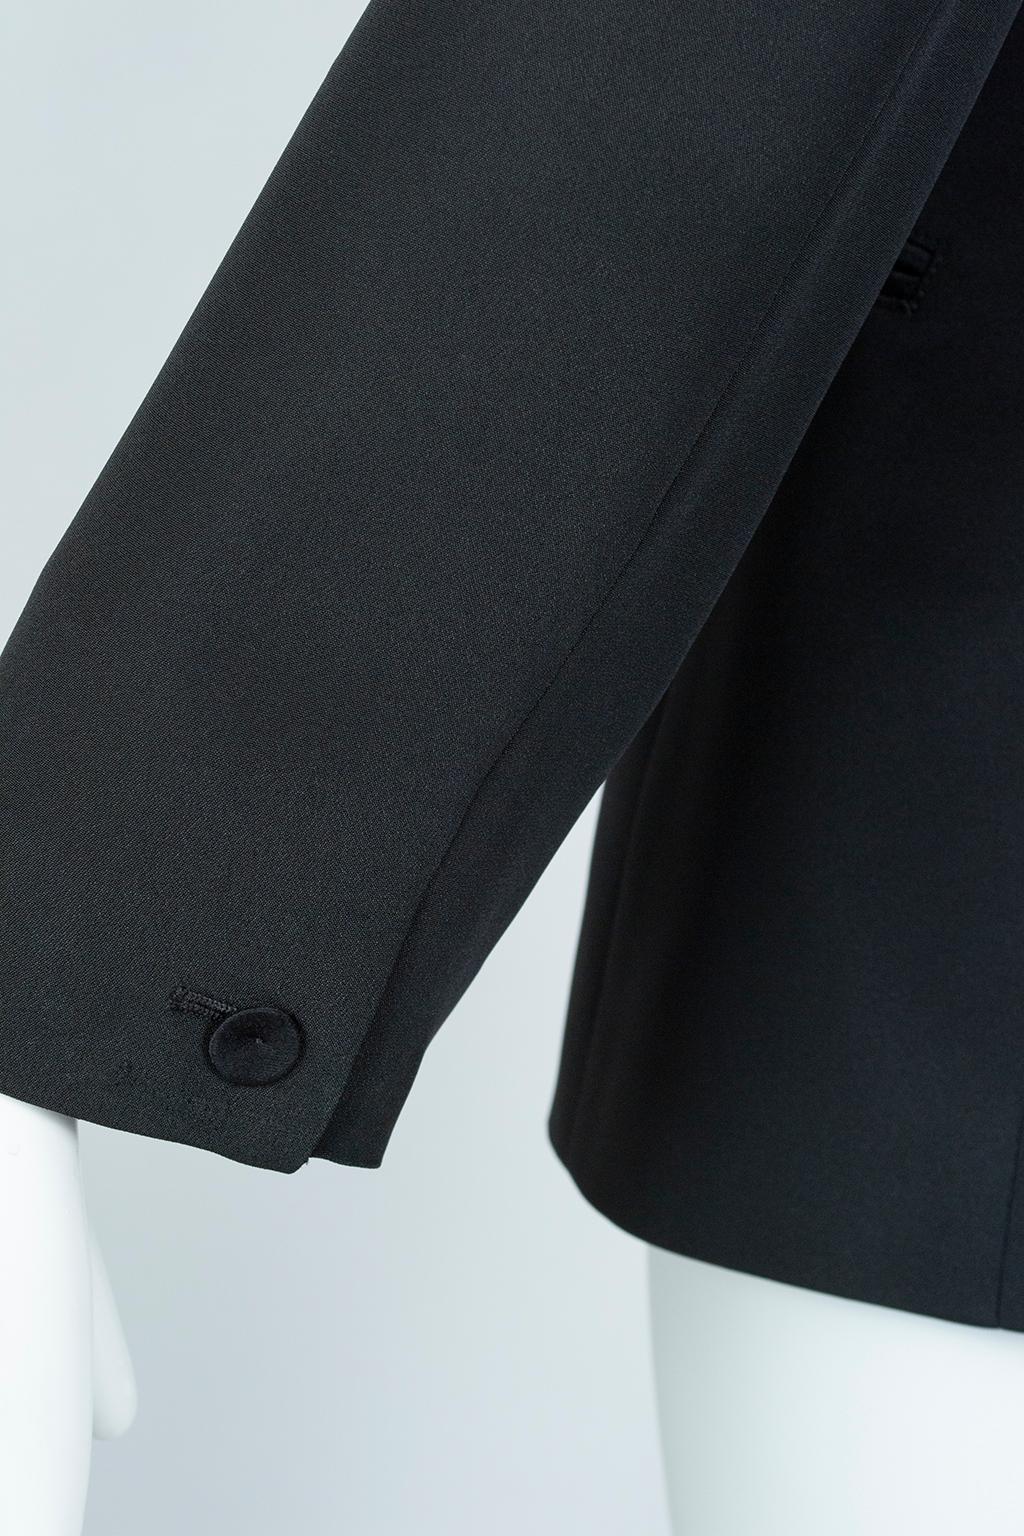 Giorgio Armani Black Silk Faille “Le Smoking” Tuxedo Blazer Jacket - It 42, 2001 For Sale 4